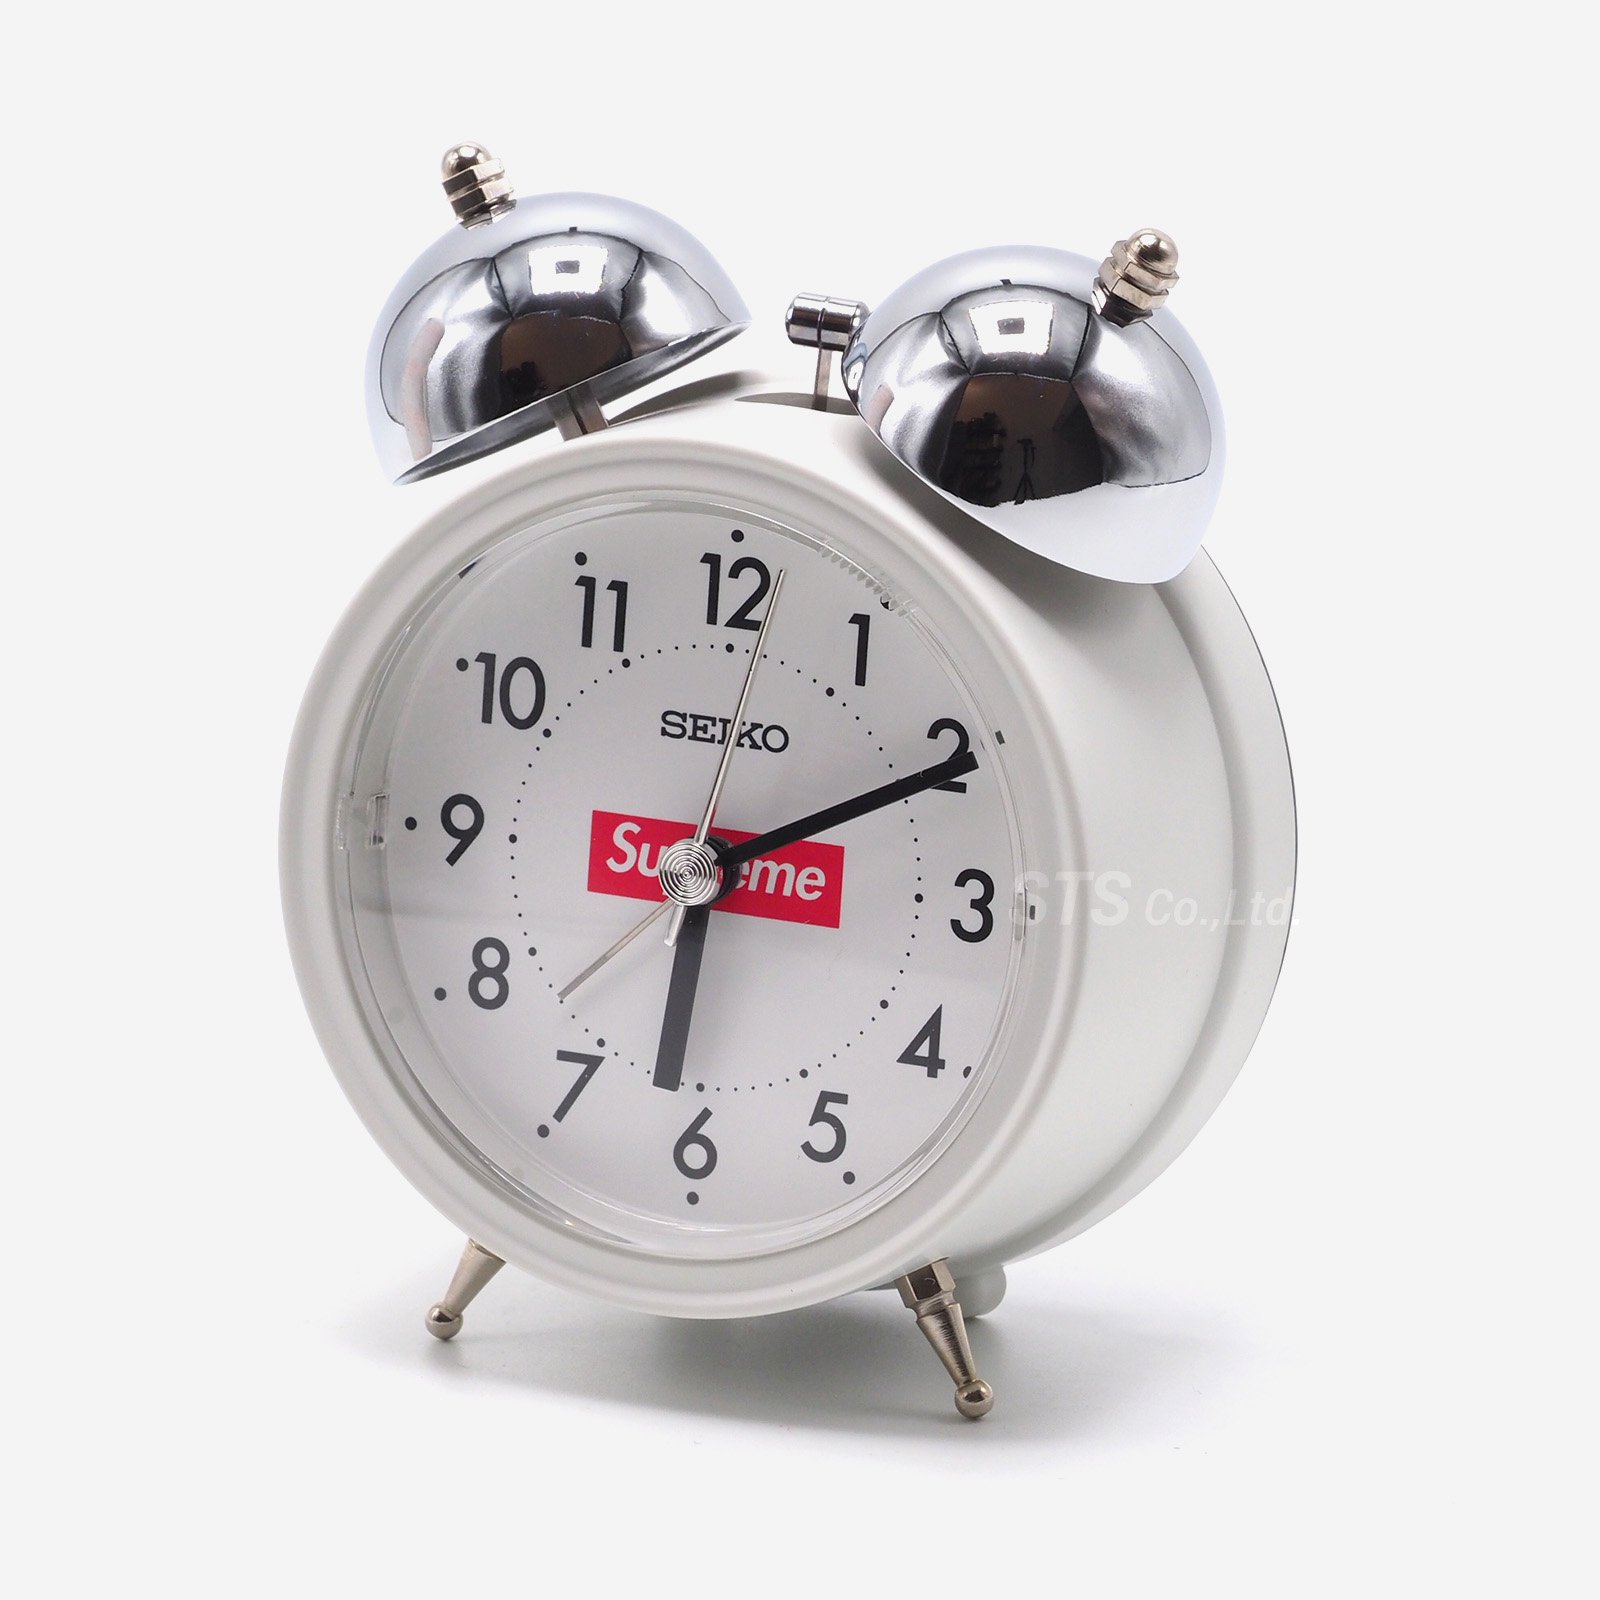 格安店 Supreme Seiko Alarm Clock White ecousarecycling.com